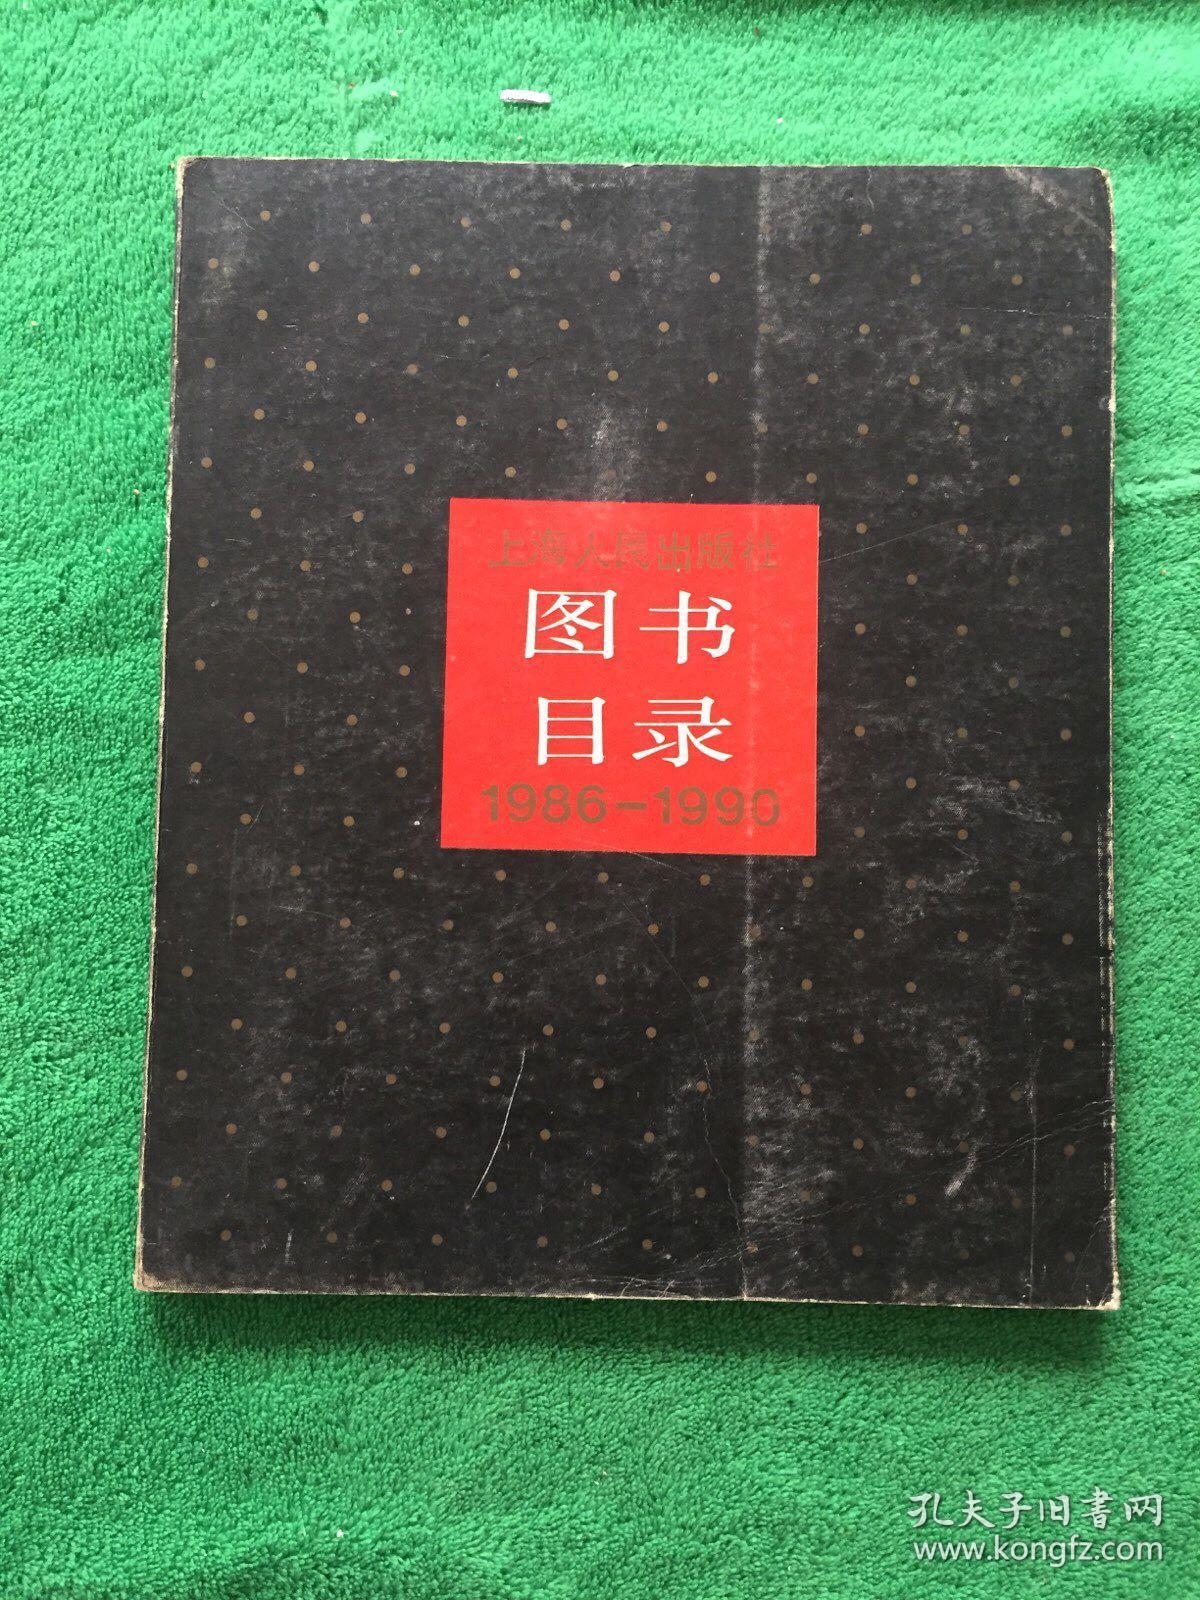 上海人民出版社图书目录1986---1990